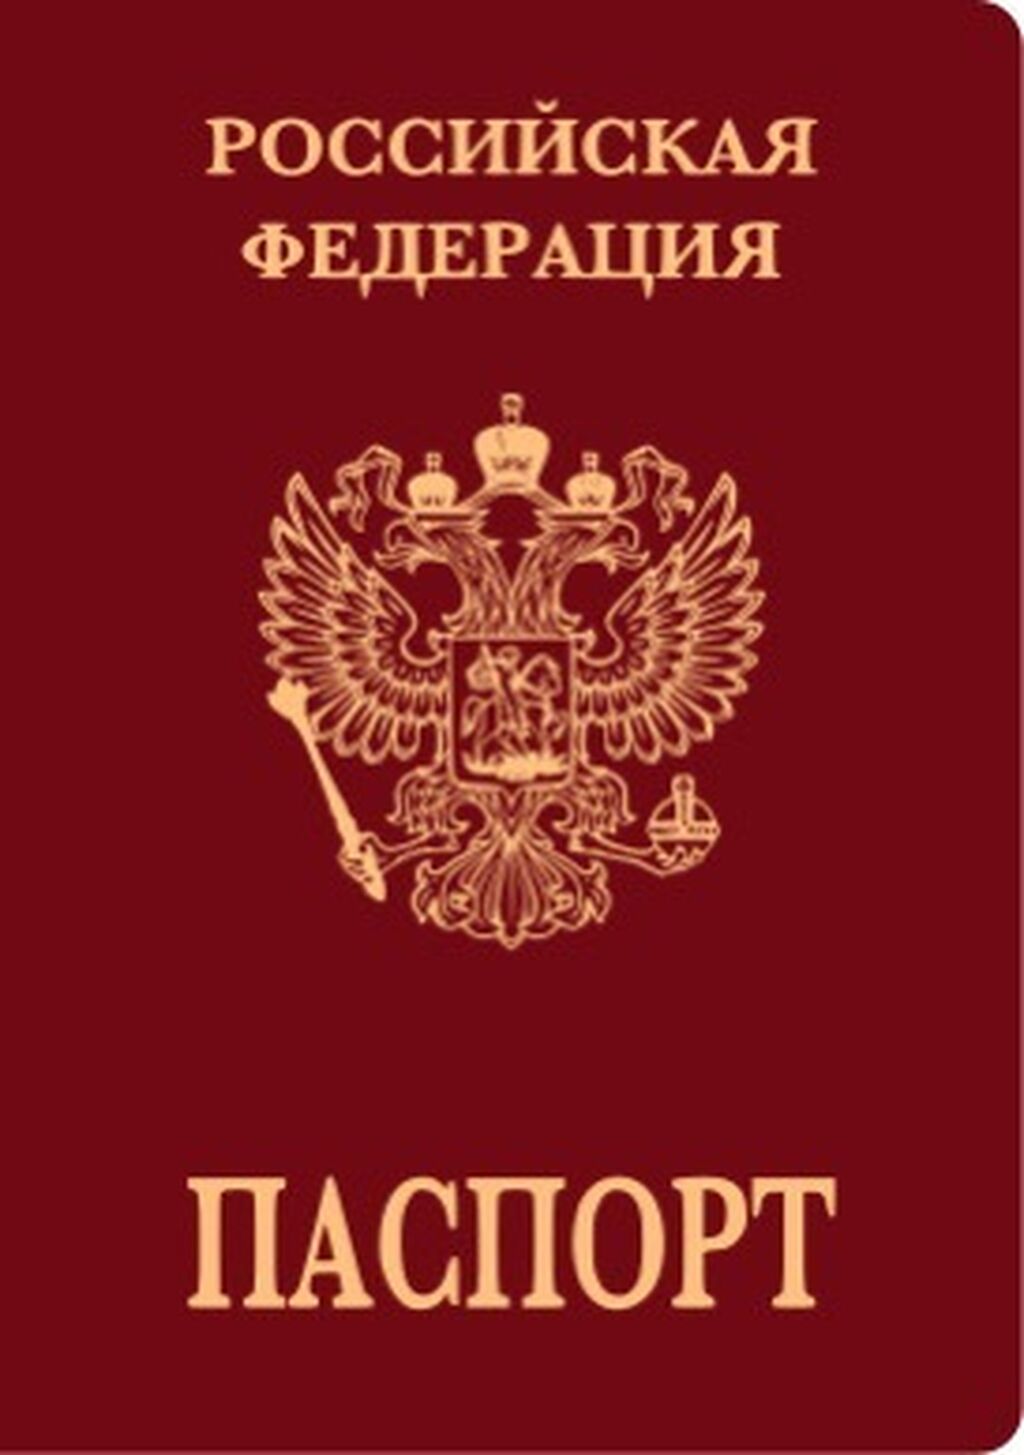 Internal Passport